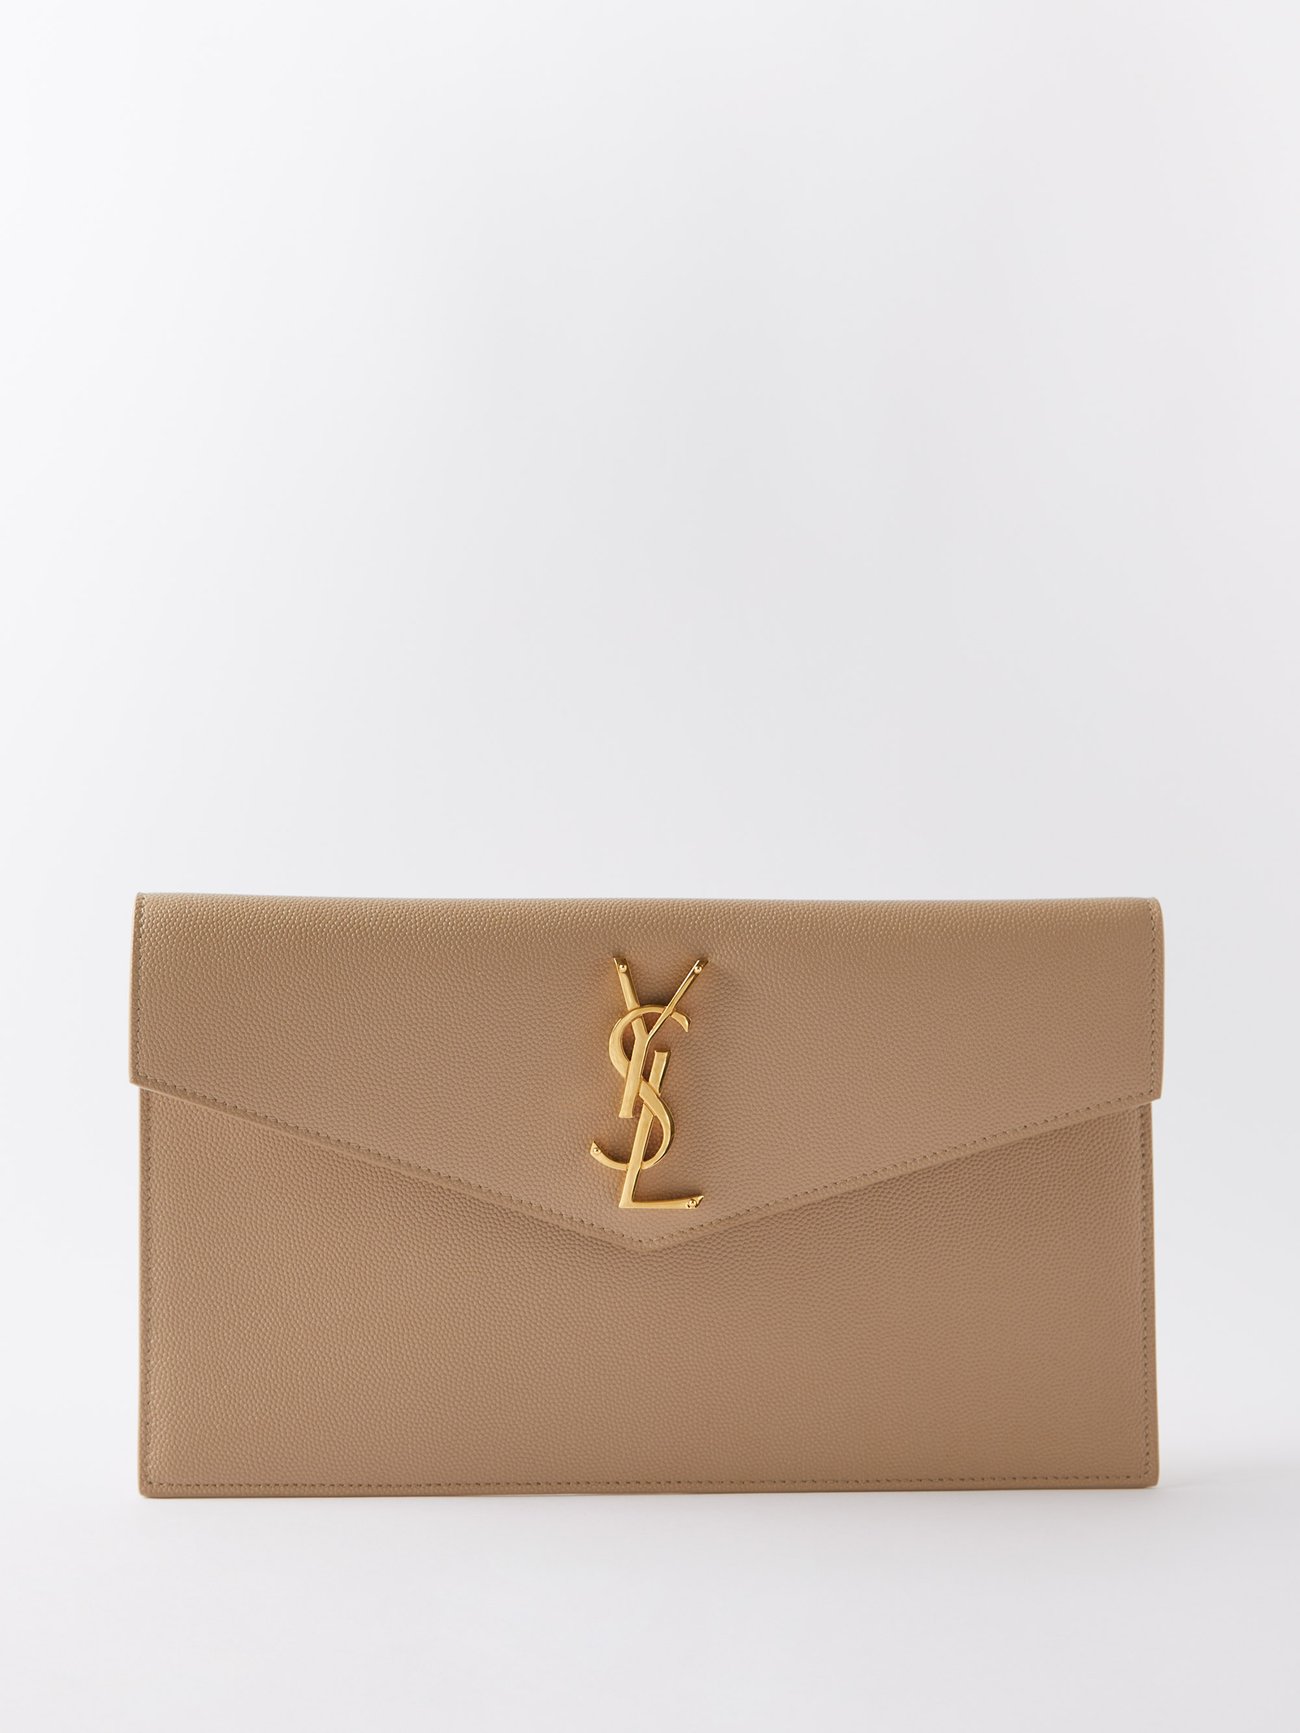 Saint Laurent Monogram Envelope Clutch Bag - Neutrals Size